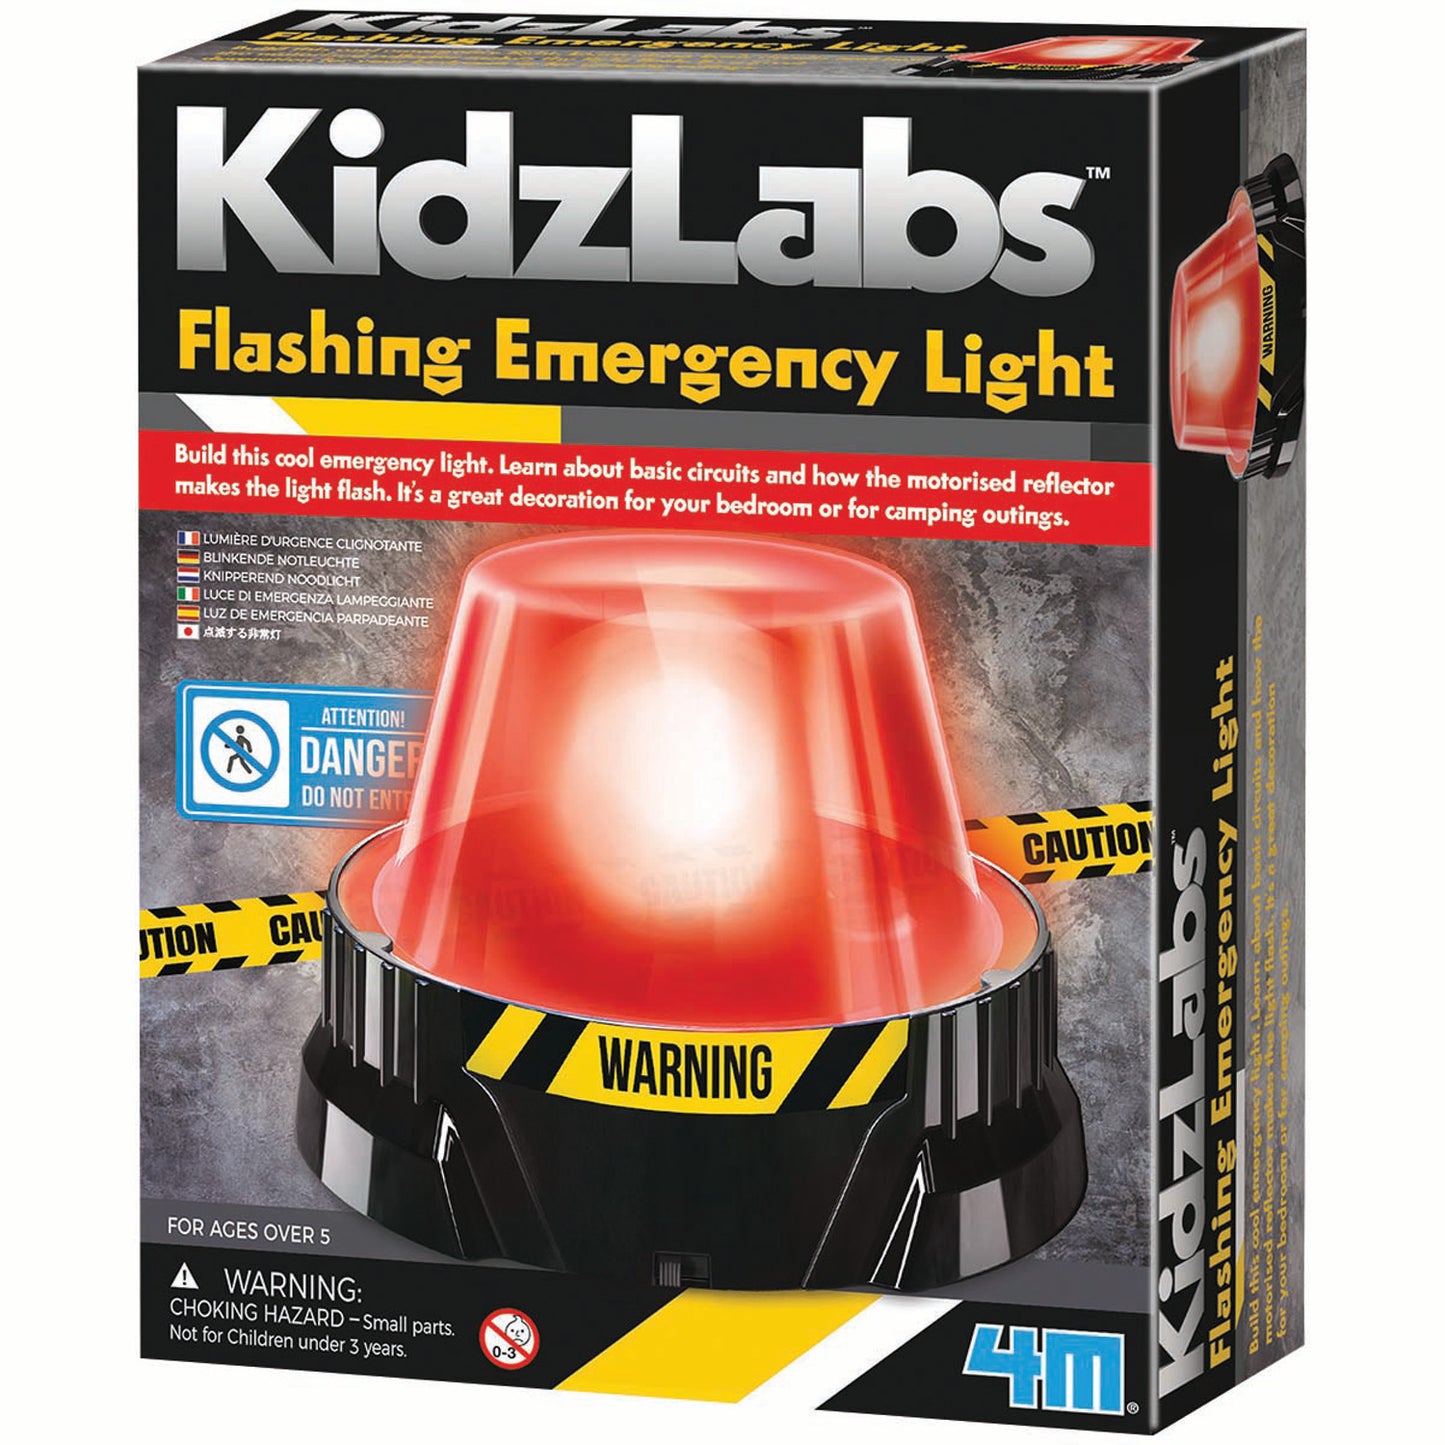 Flashing Emergency Light Kit